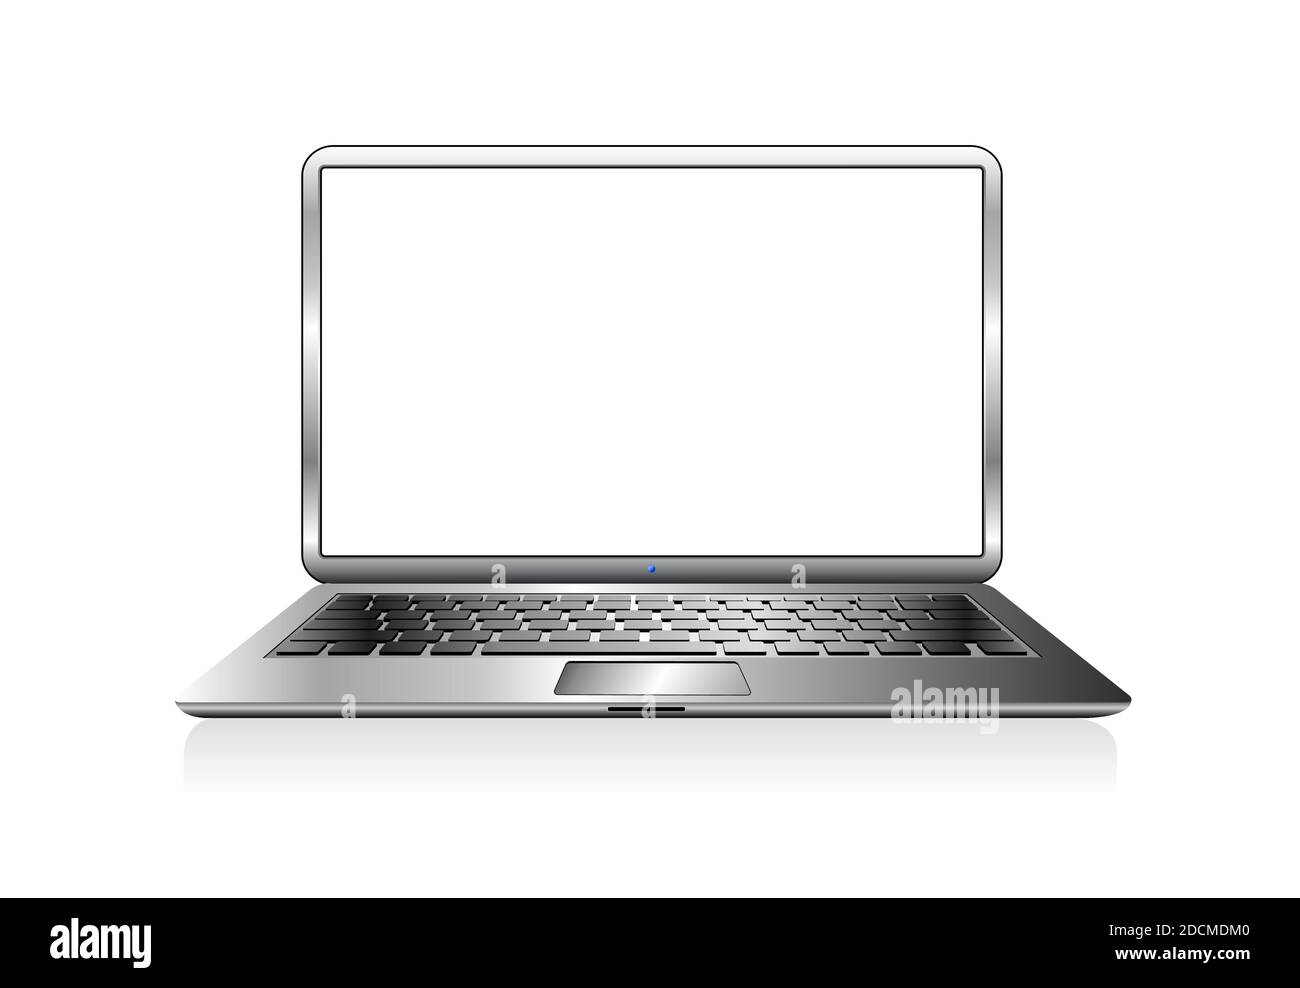 Immagine vettoriale dell'icona del computer portatile Silver PC Illustrazione Vettoriale